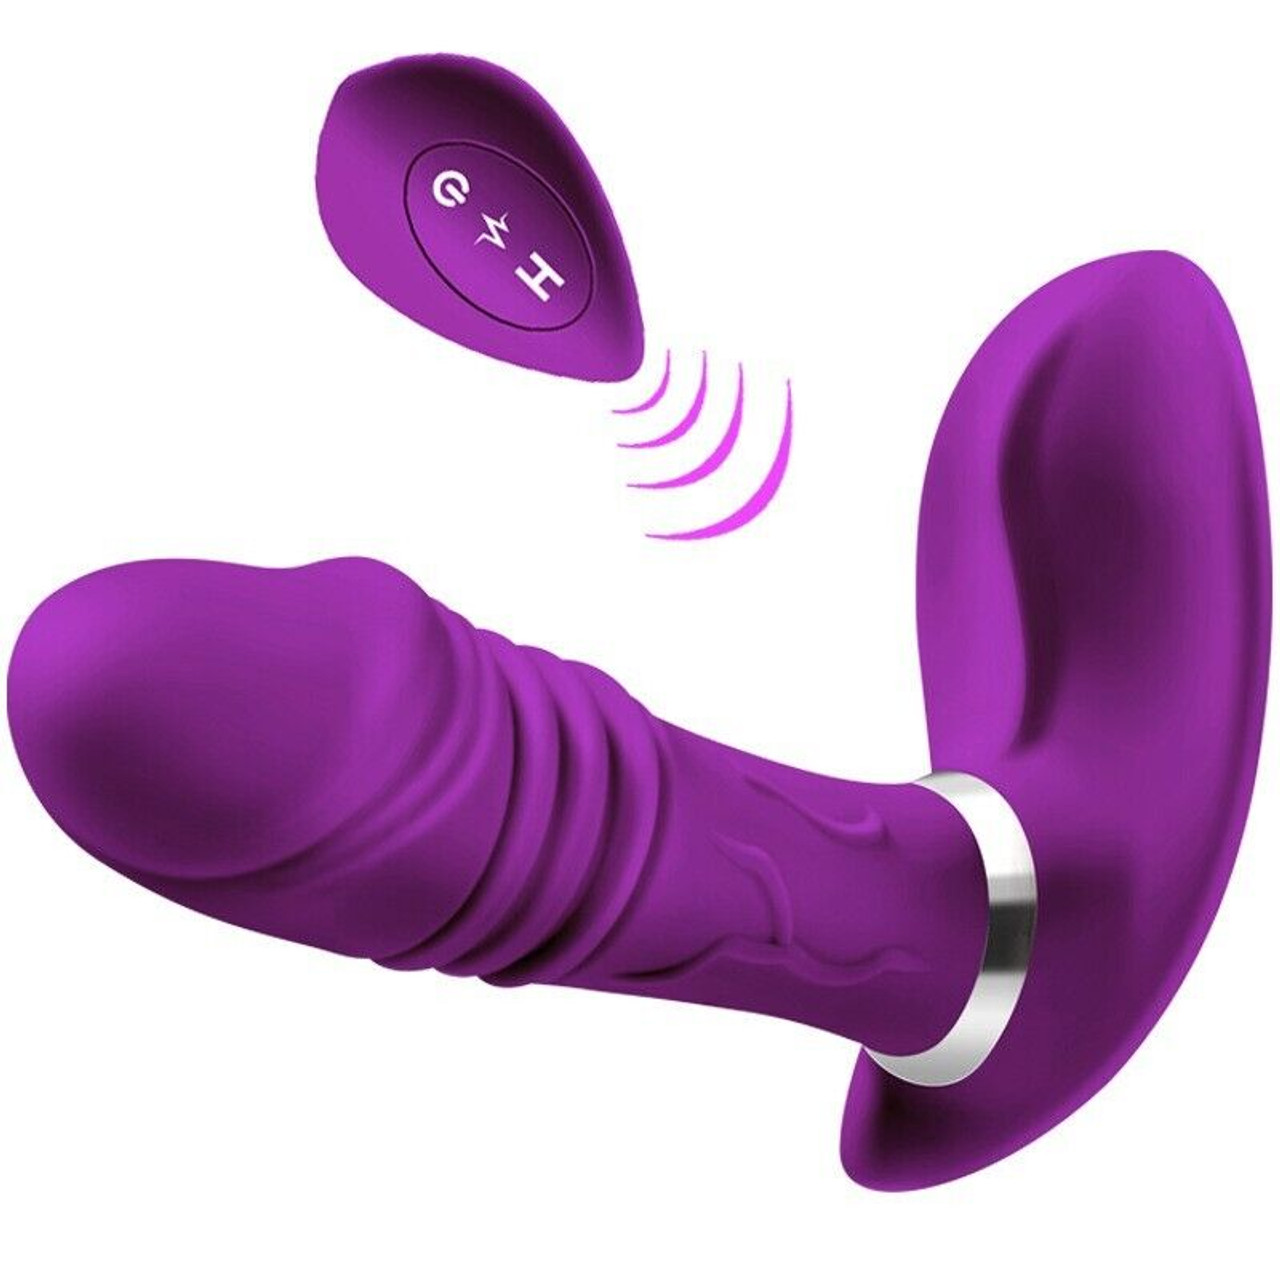 Wearable G-Spot Clit Vibrator Dildo Thrusting Massager Adult Sex Toys For Women